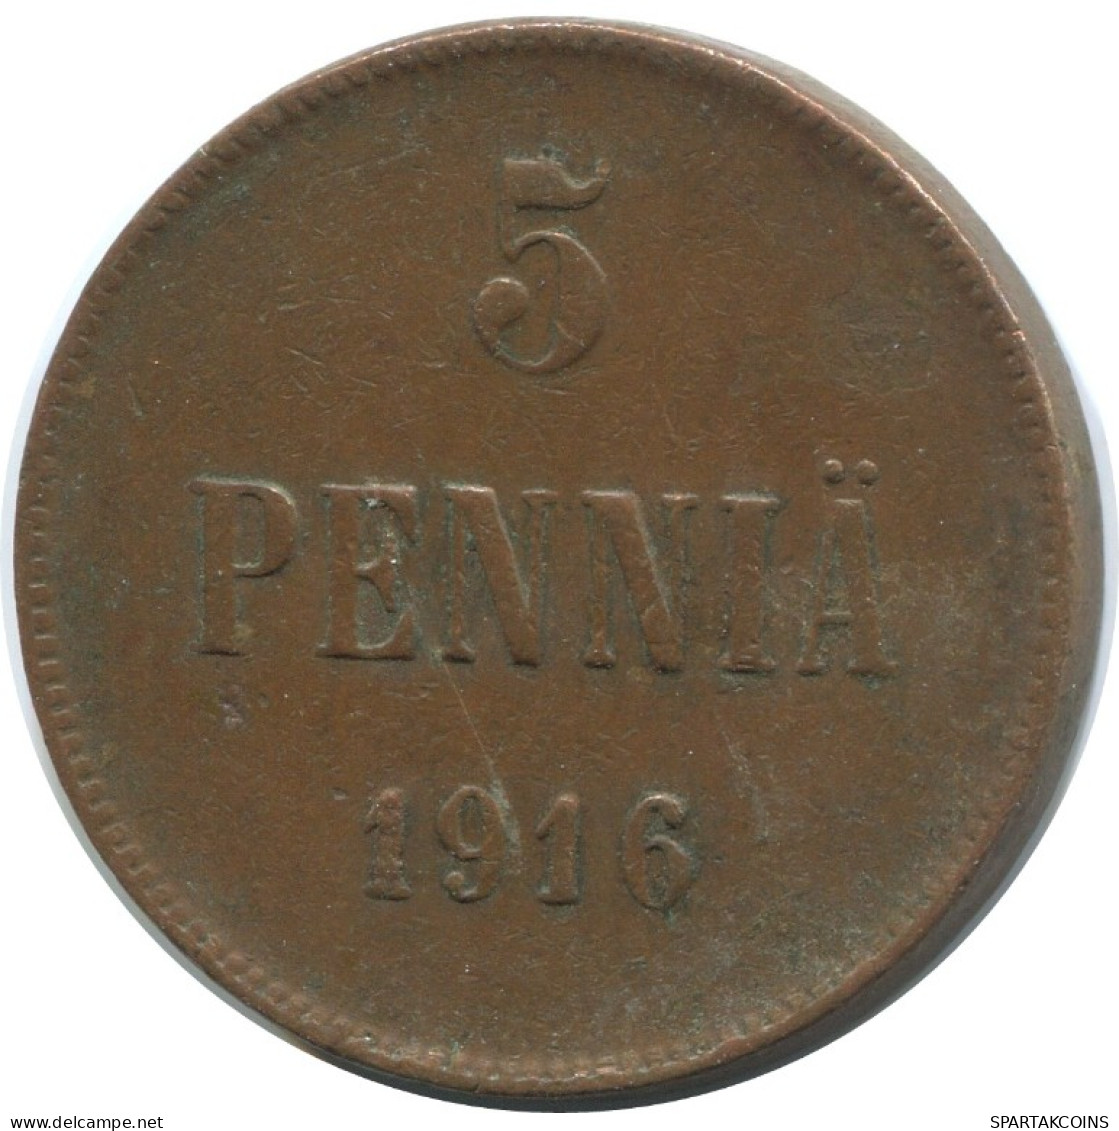 5 PENNIA 1916 FINLANDIA FINLAND Moneda RUSIA RUSSIA EMPIRE #AB263.5.E.A - Finlandia